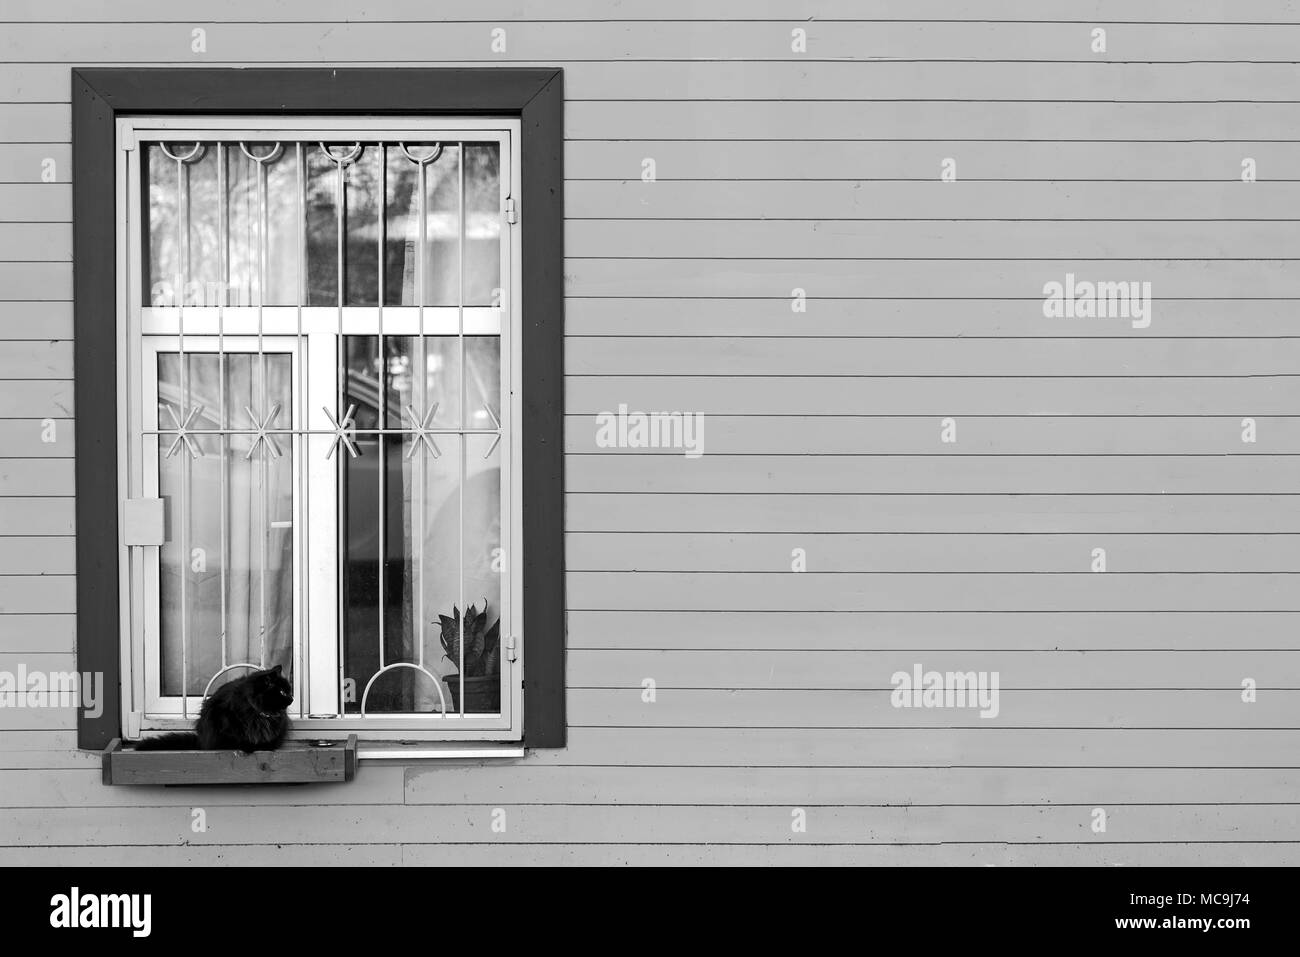 En el recuadro que aparece en la ventana de inicio es un gato sentado. Fotografía en blanco y negro. Foto de stock